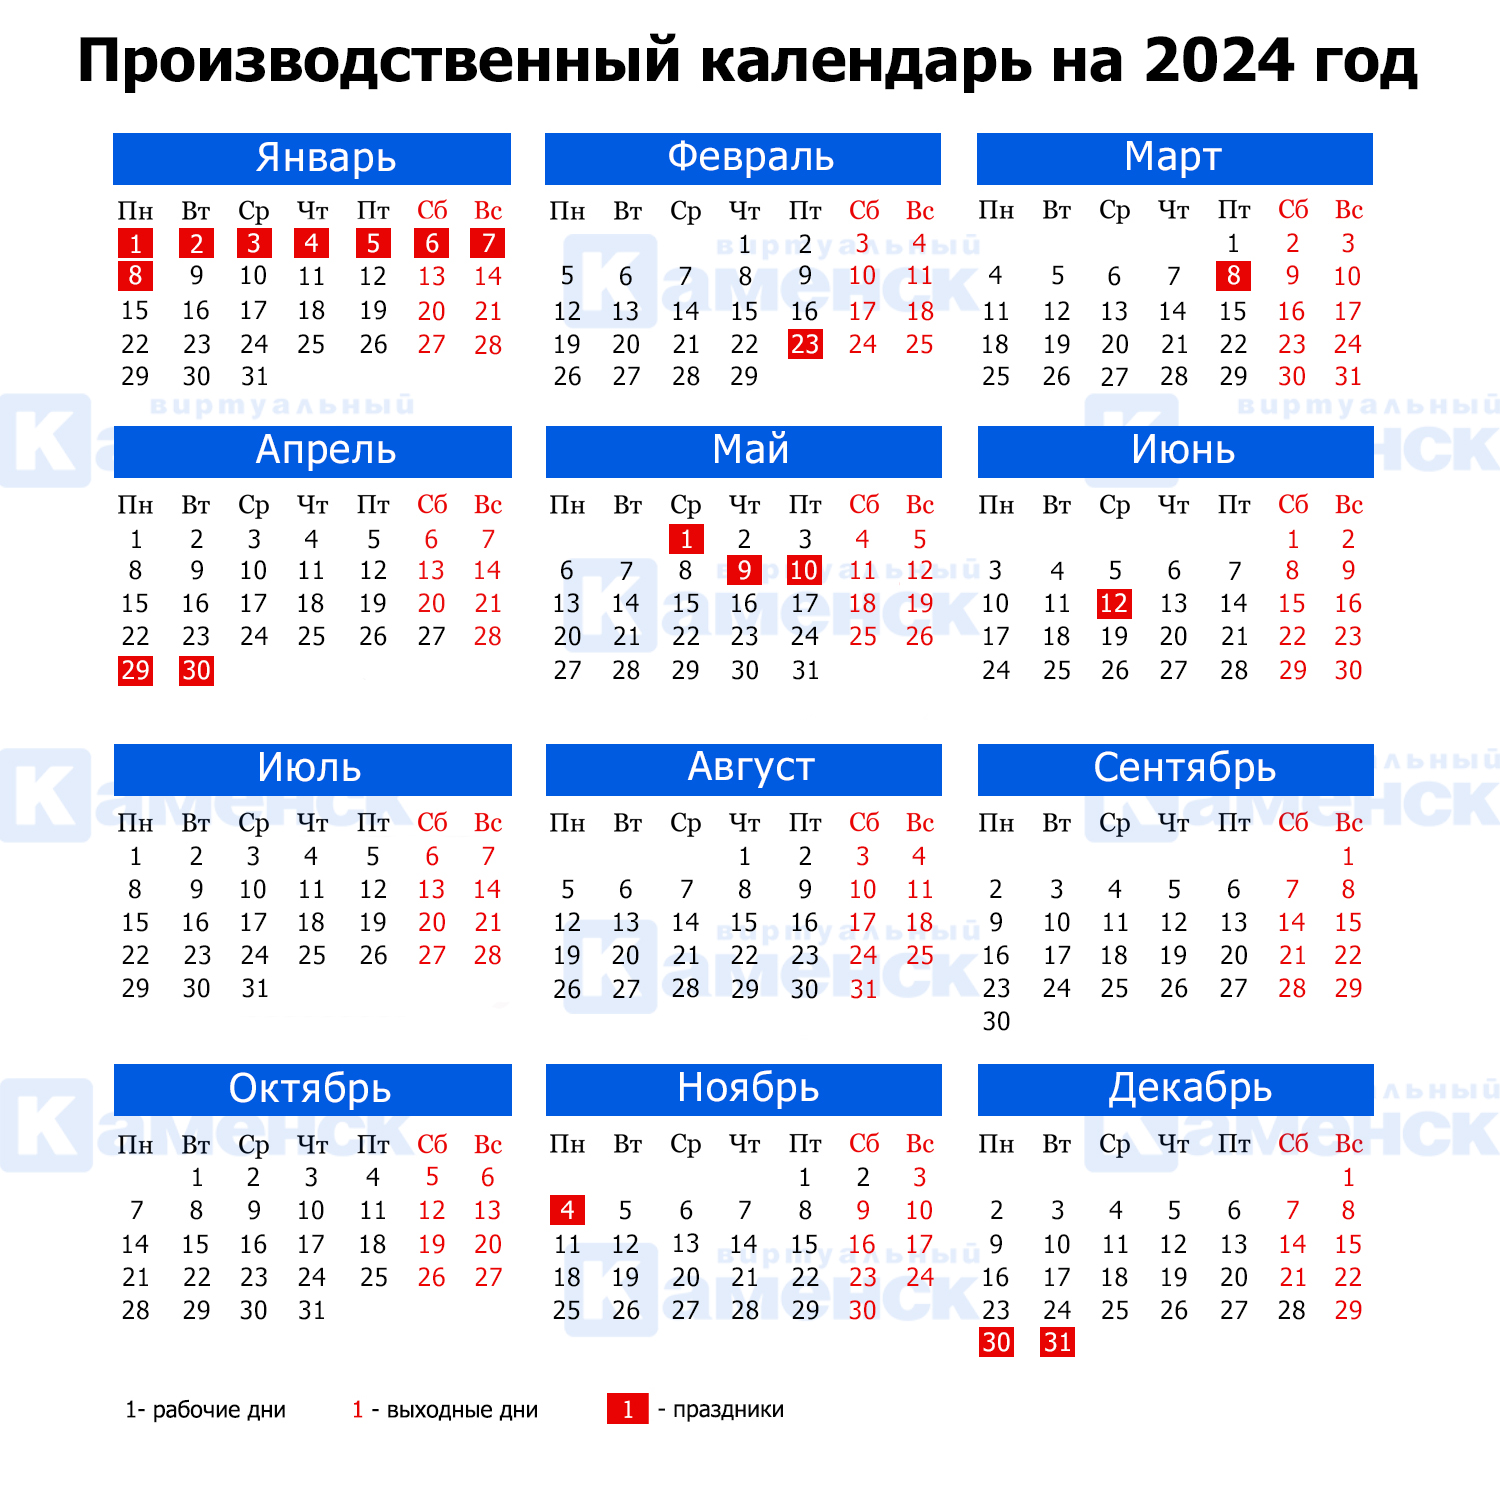 Как будем работать и отдыхать: производственный календарь на 2024 год |  19.06.2023 | Каменск-Уральский - БезФормата